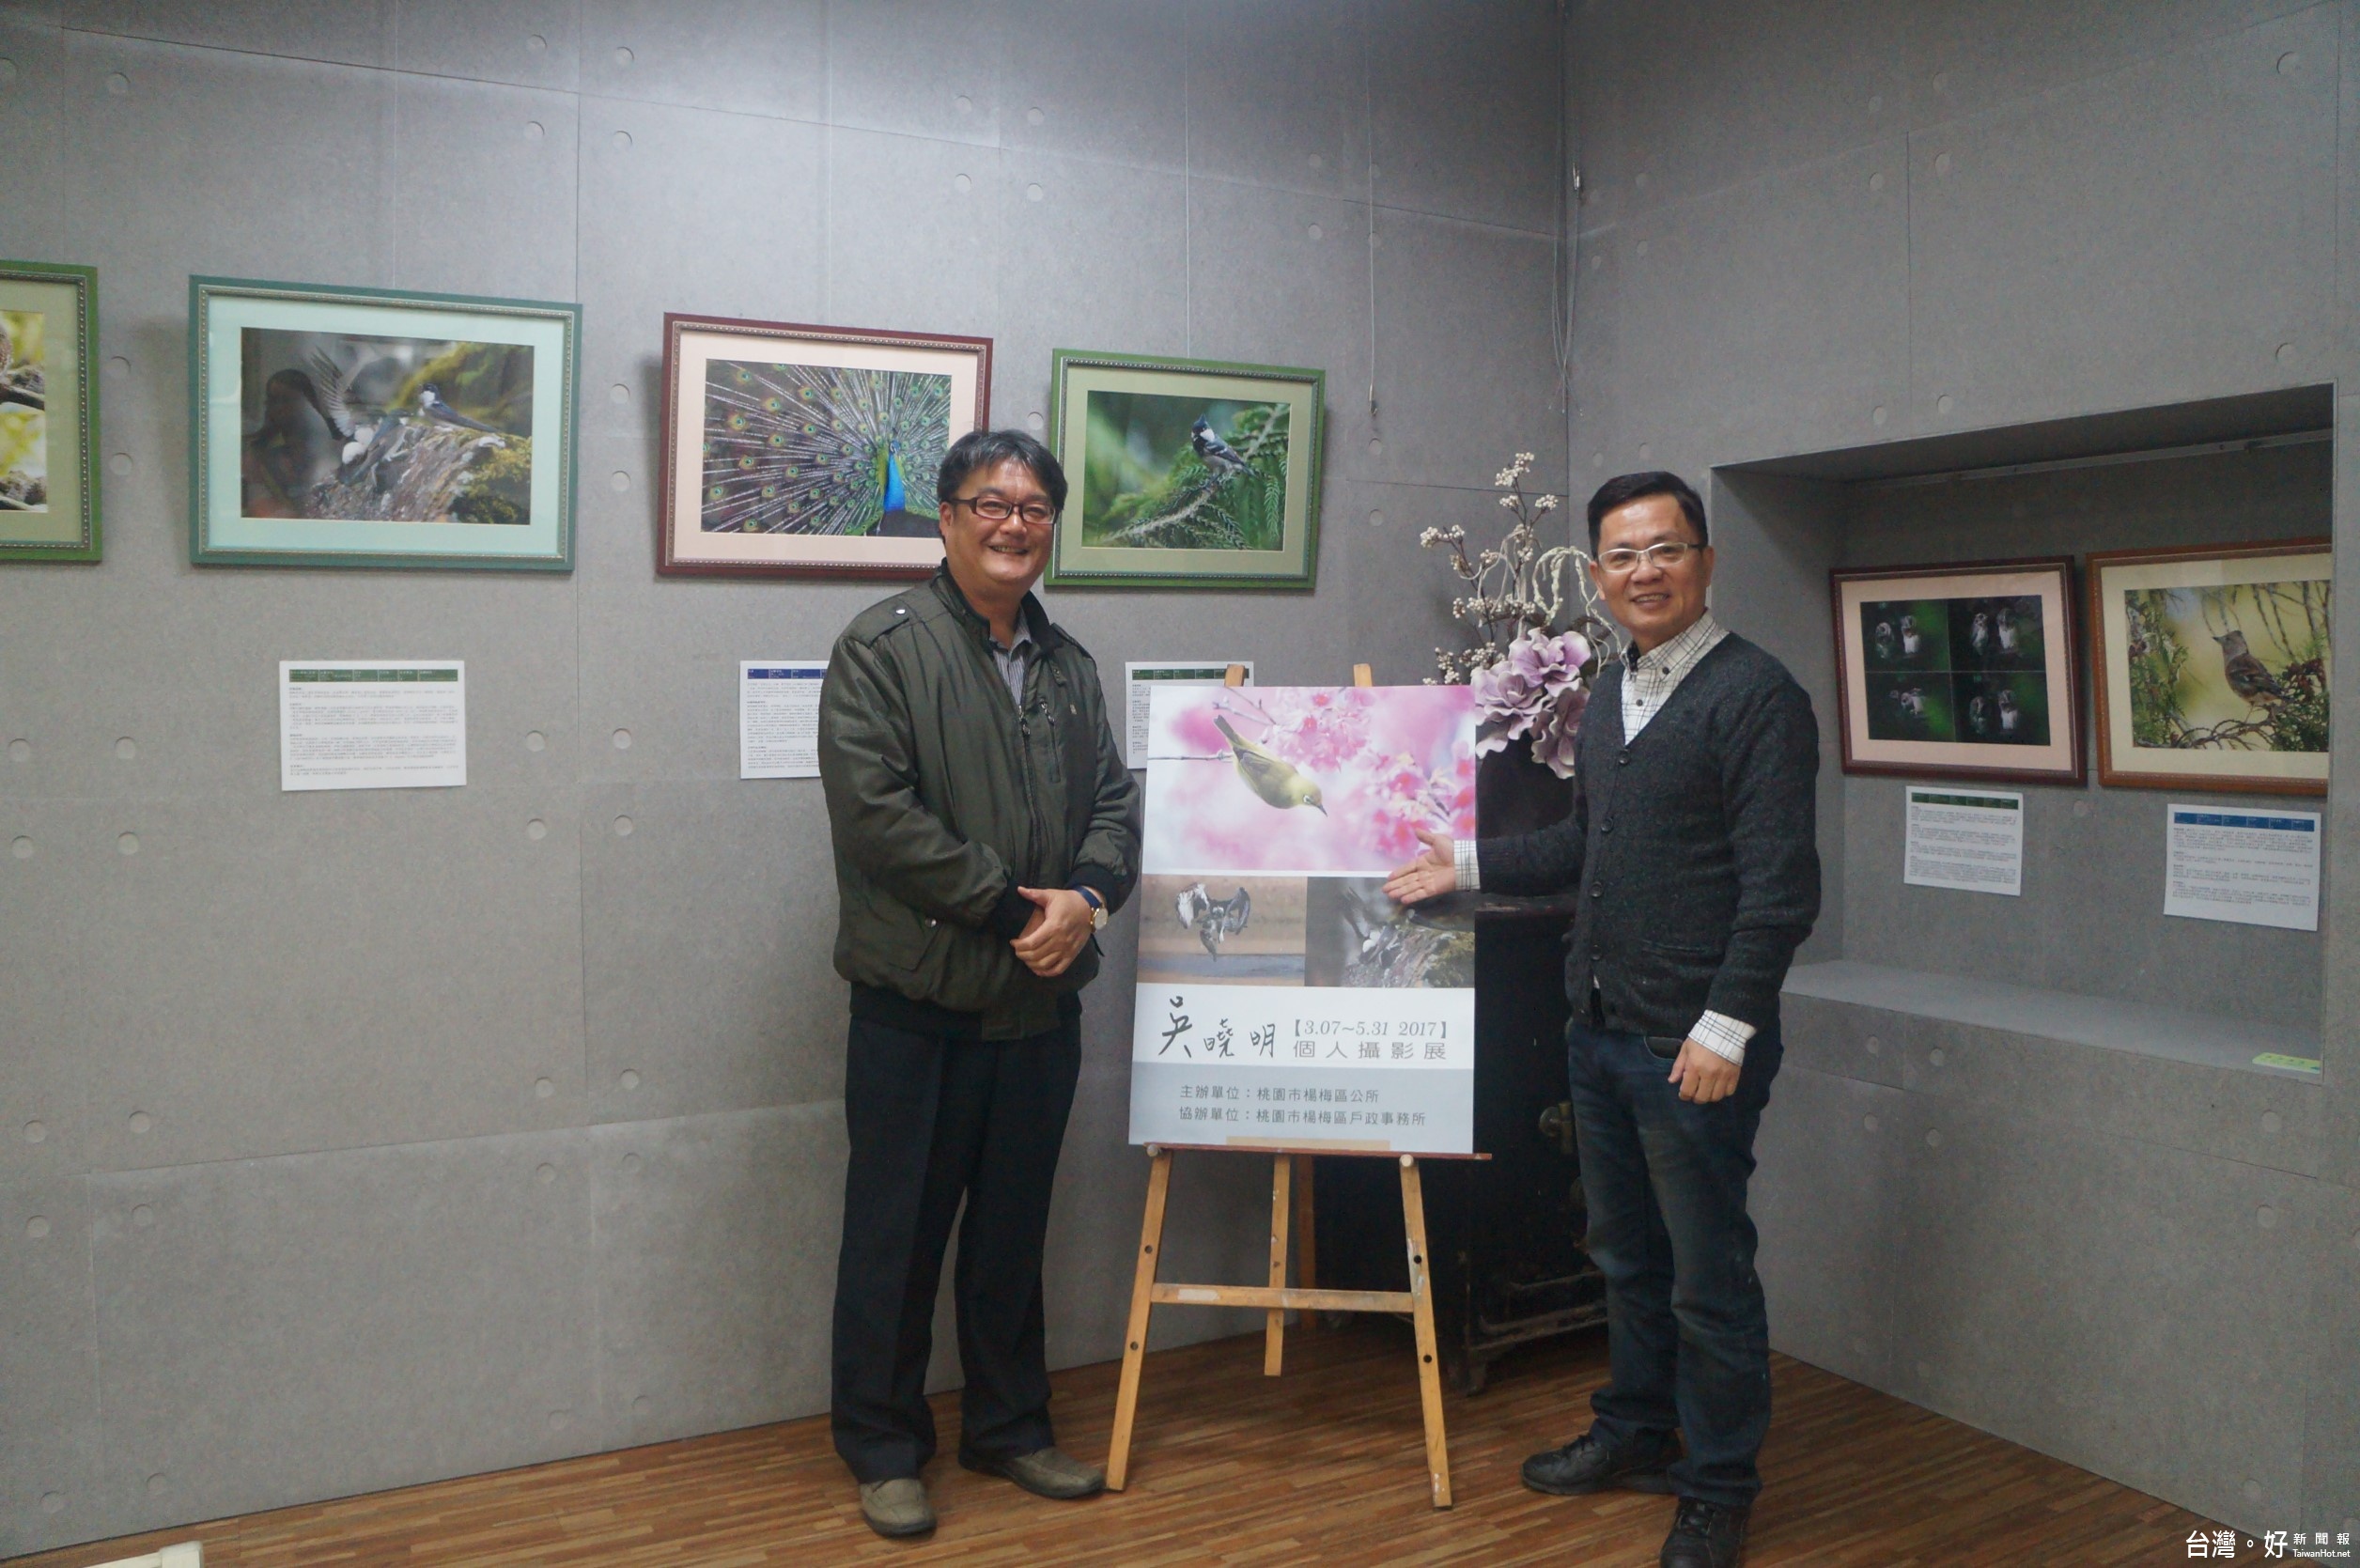 楊梅姚敦明區長(右)、吳曉明主任，歡迎喜愛攝影藝術鄉親到區公所欣賞台灣野鳥生態攝影展。 